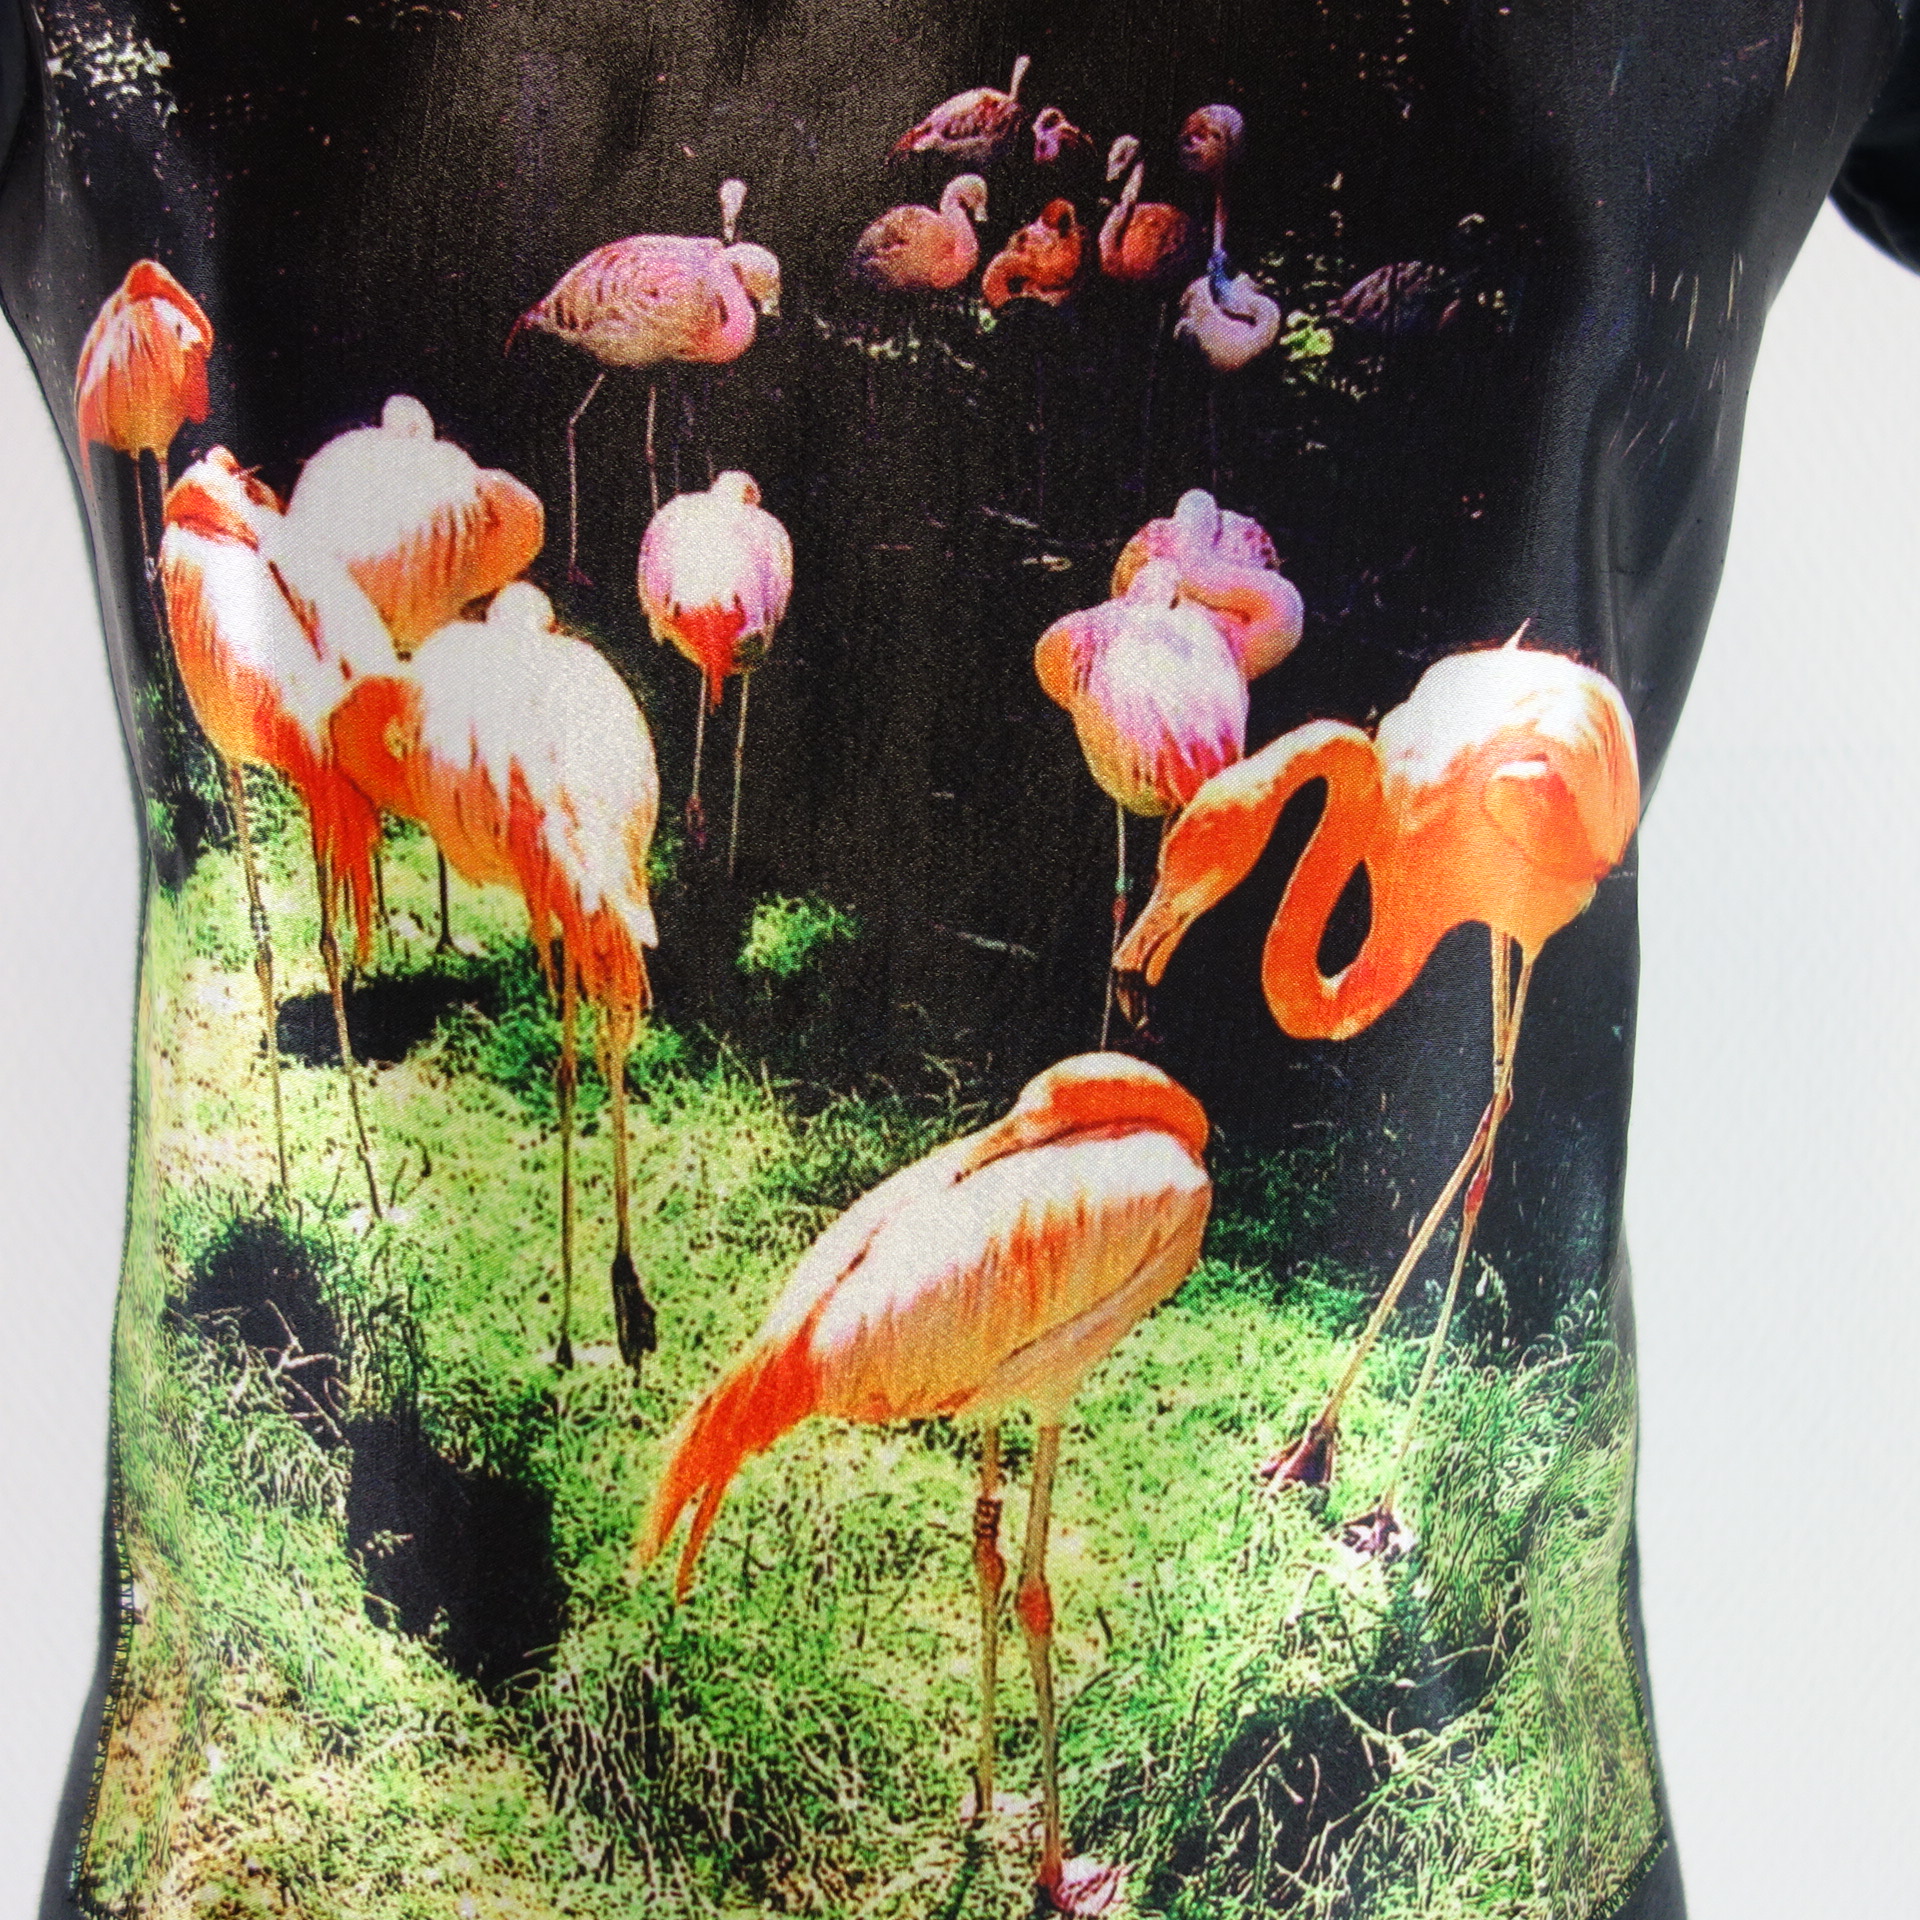 BASTILLE VENEZIA Damen T Shirt T-Shirt Oberteil Schwarz Flamingo 100% Baumwolle